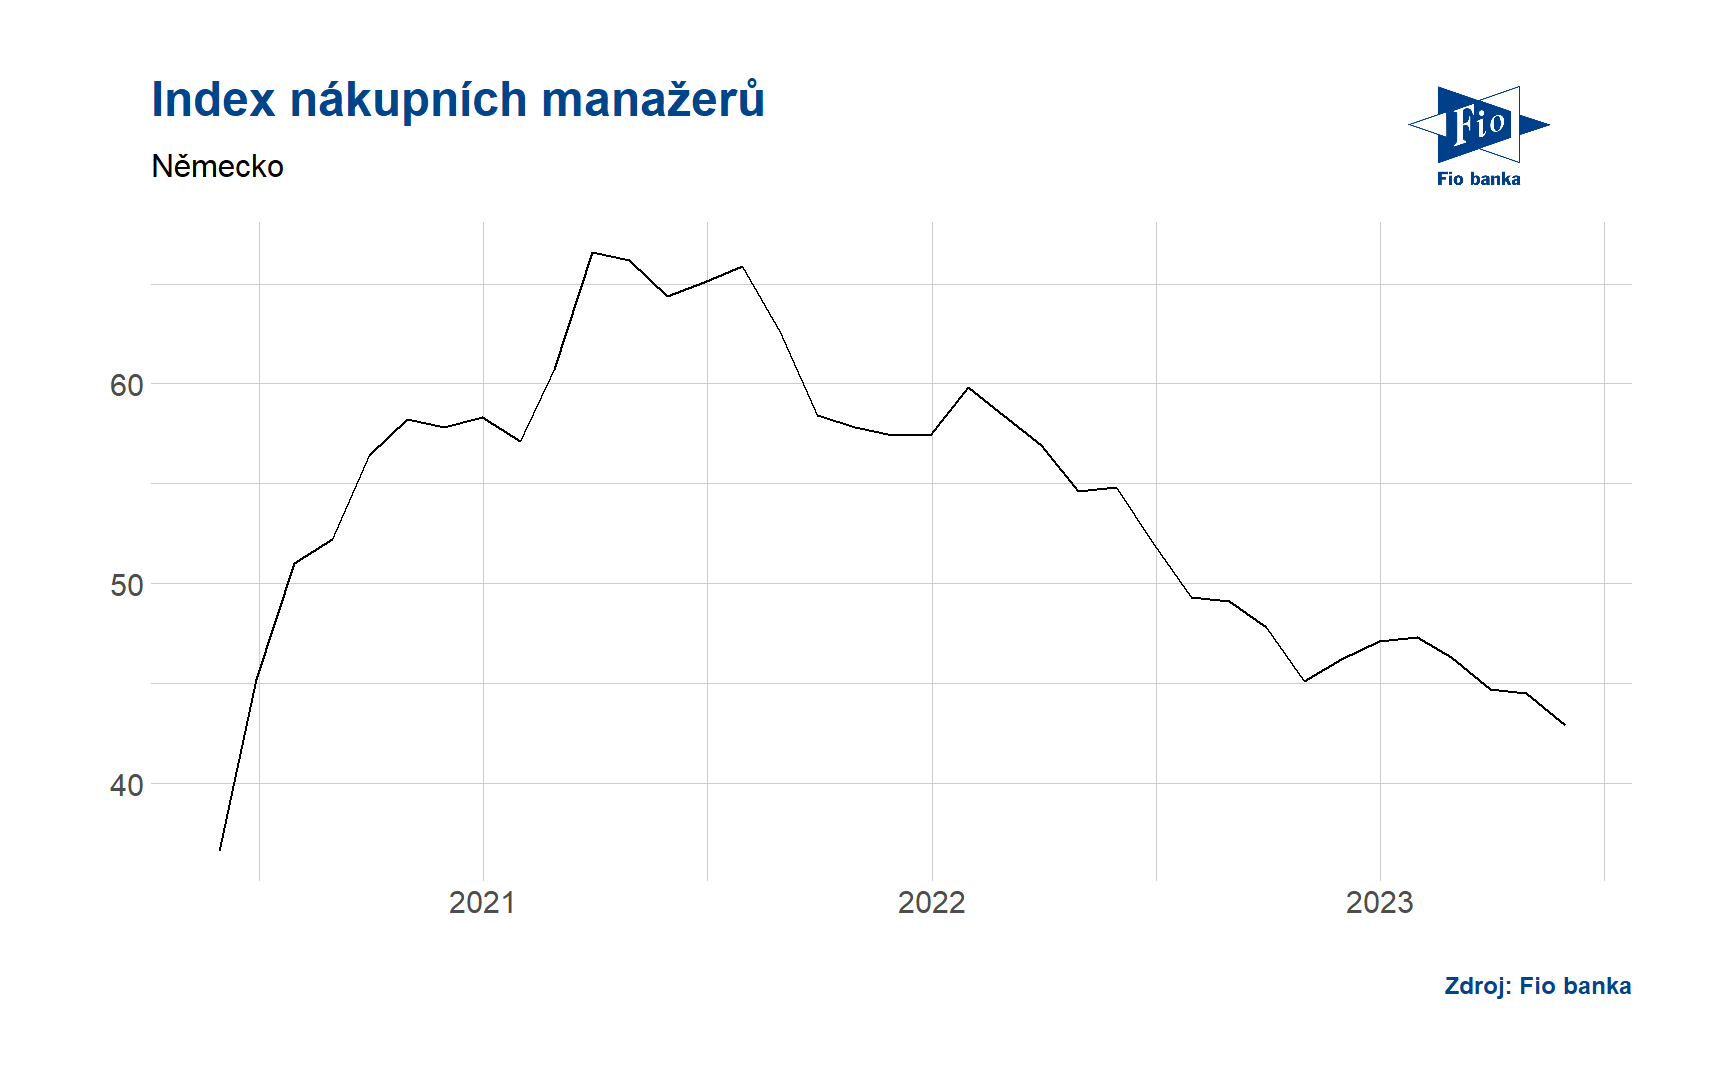 Index nákupních manažerů PMI - Německo